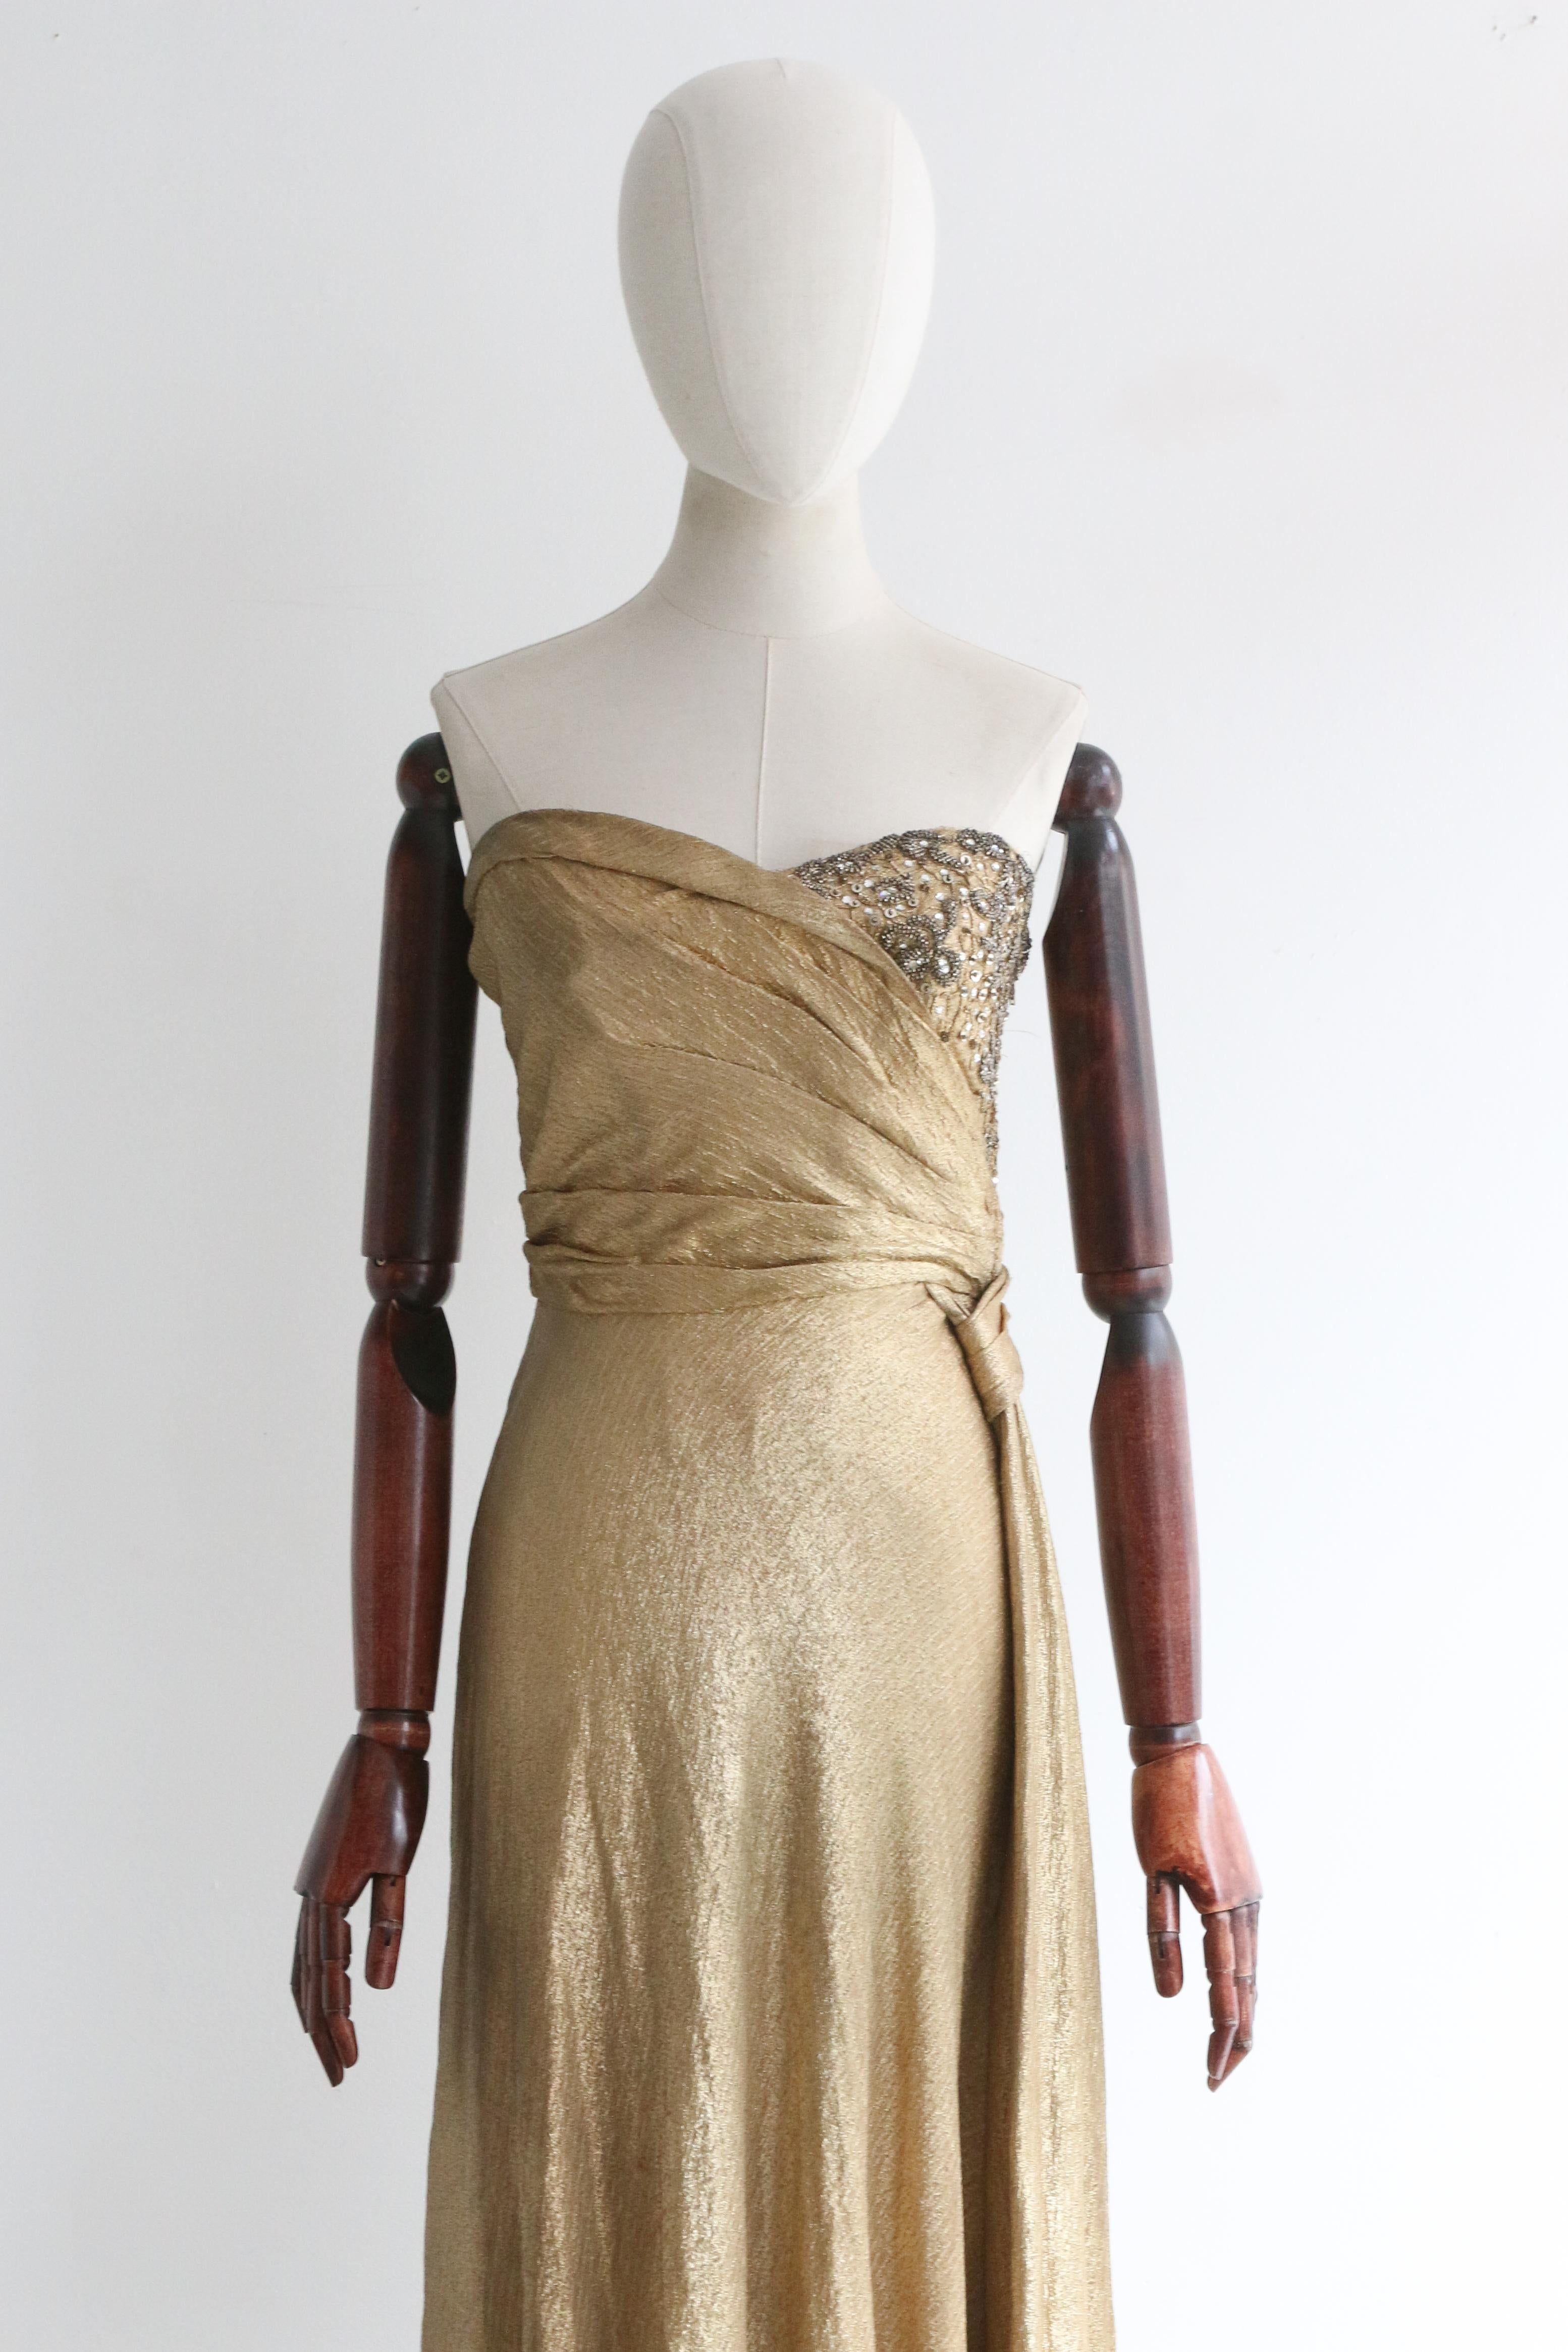 Dieses wahrhaft prächtige Kleid aus goldenem Seidenlamé aus den 1930er Jahren, das mit grauen und silbernen Perlen verziert ist, ist ein phänomenales Stück für Ihre Abendgarderobe.

Das trägerlose Dekolleté des Kleides wird von einem taillierten und